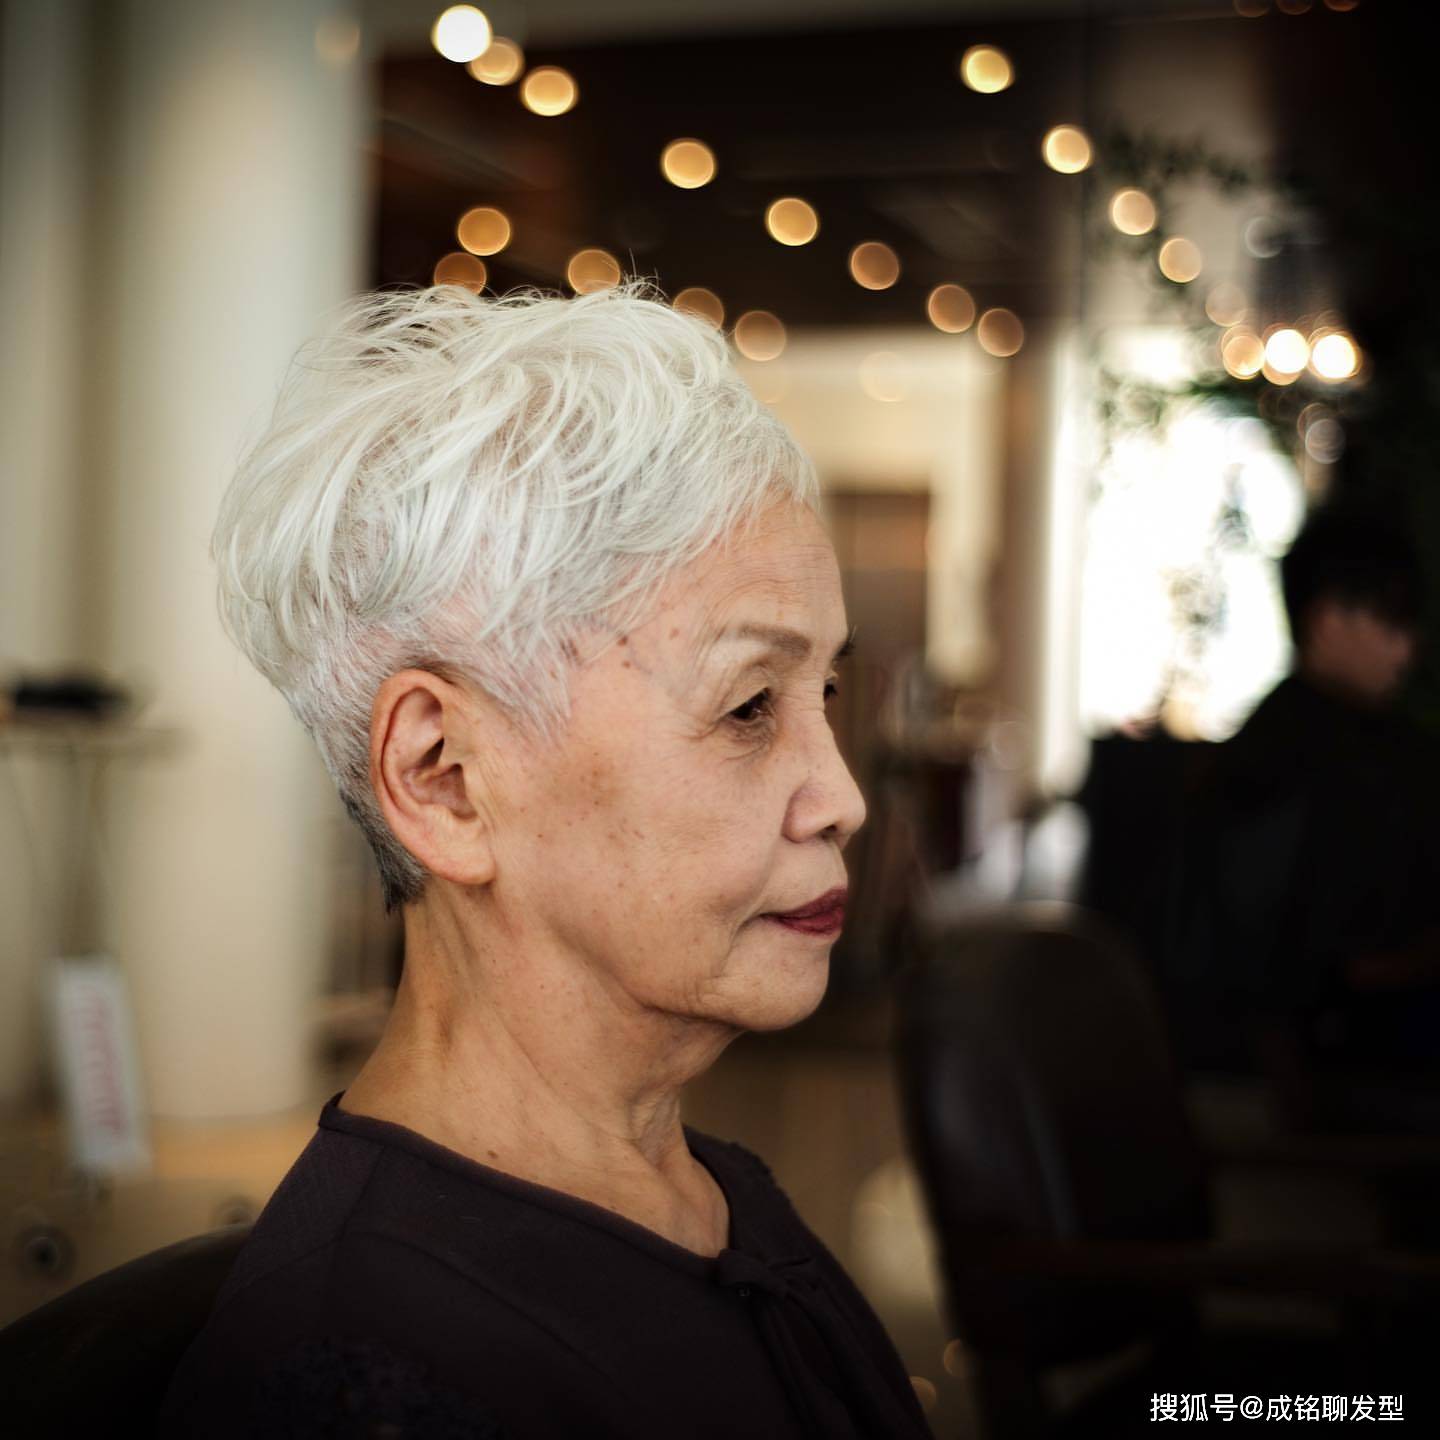 中老年女性发型别乱剪，露耳短发最适合，即使头发花白也很美 - 哔哩哔哩